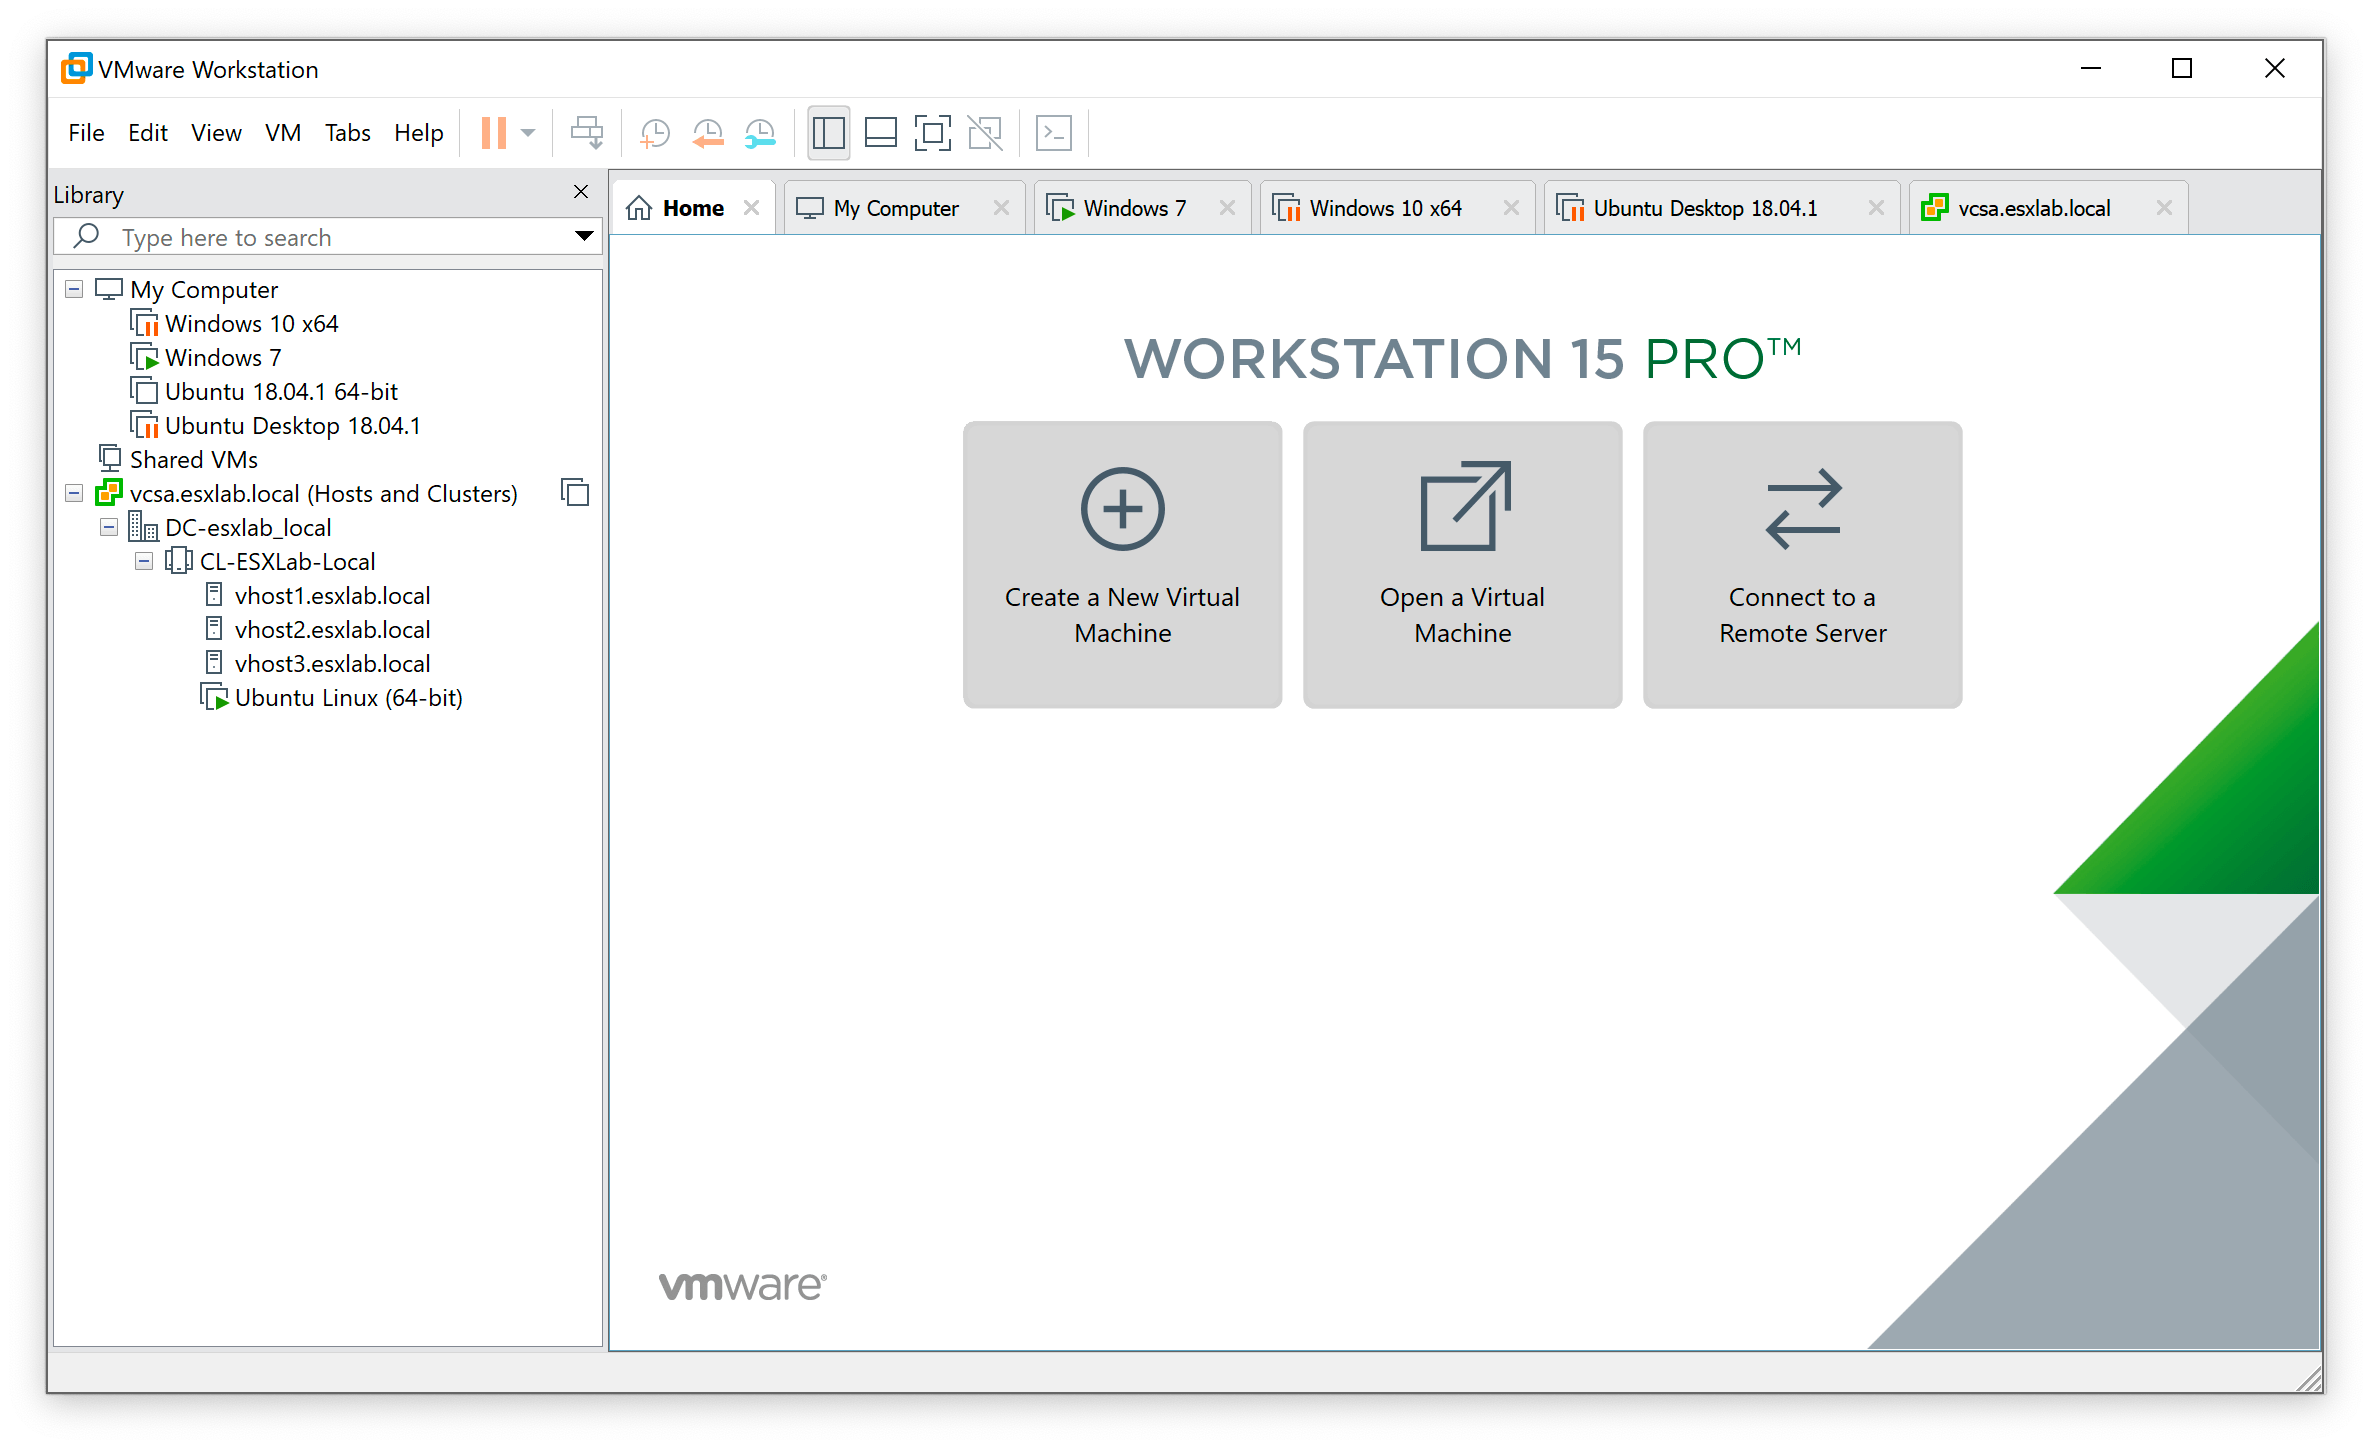 vmware workstation15 pro update interface